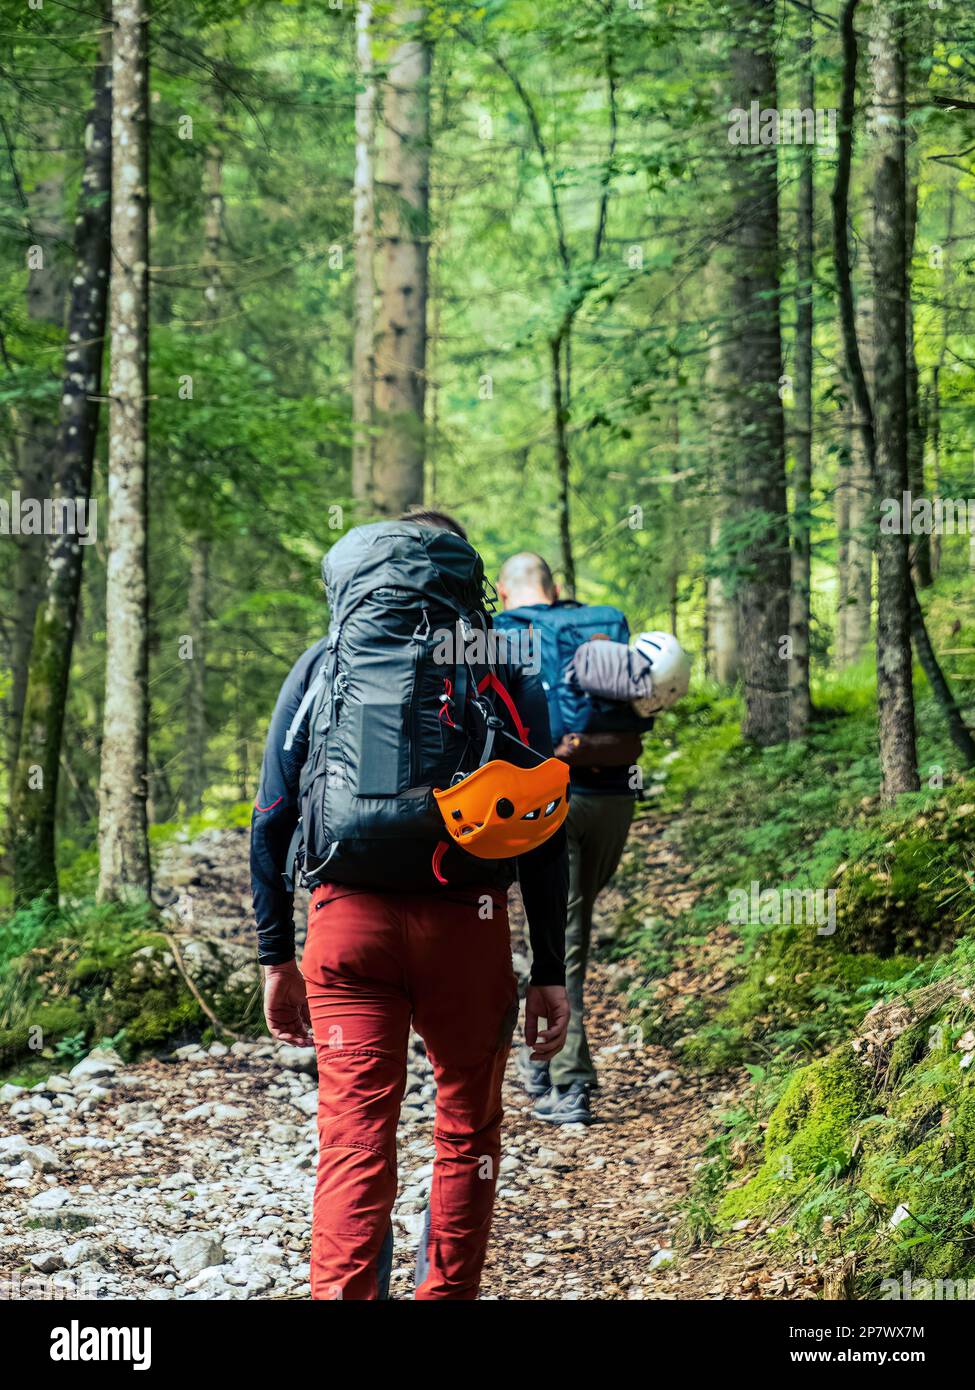 Deux hommes alpinistes randonneurs randonneurs à travers une forêt de pins de montagne avec des sacs à dos matériel d'escalade de casque Banque D'Images